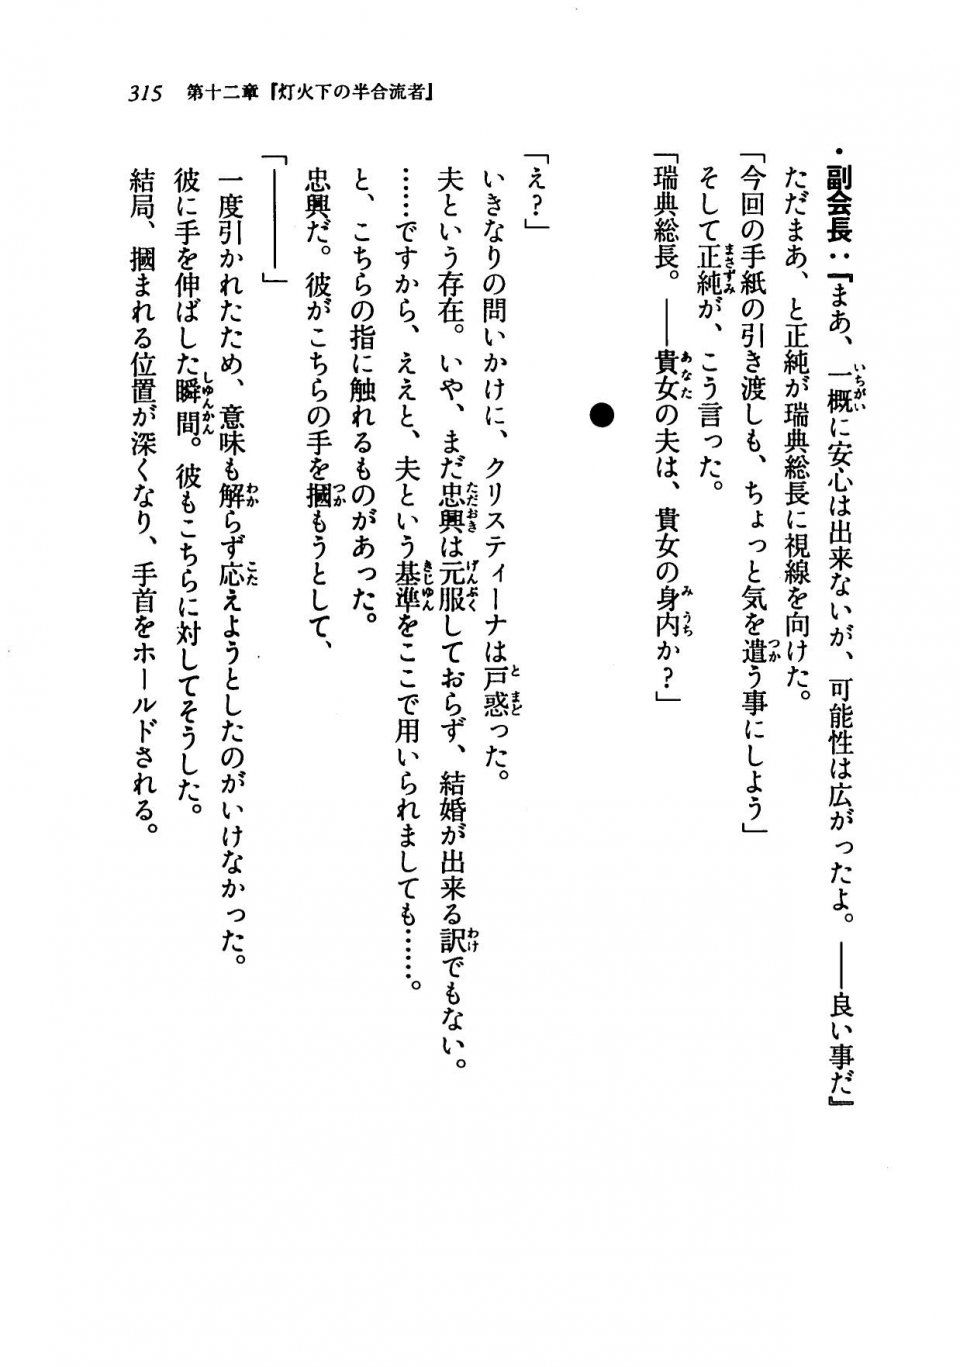 Kyoukai Senjou no Horizon LN Vol 19(8A) - Photo #315